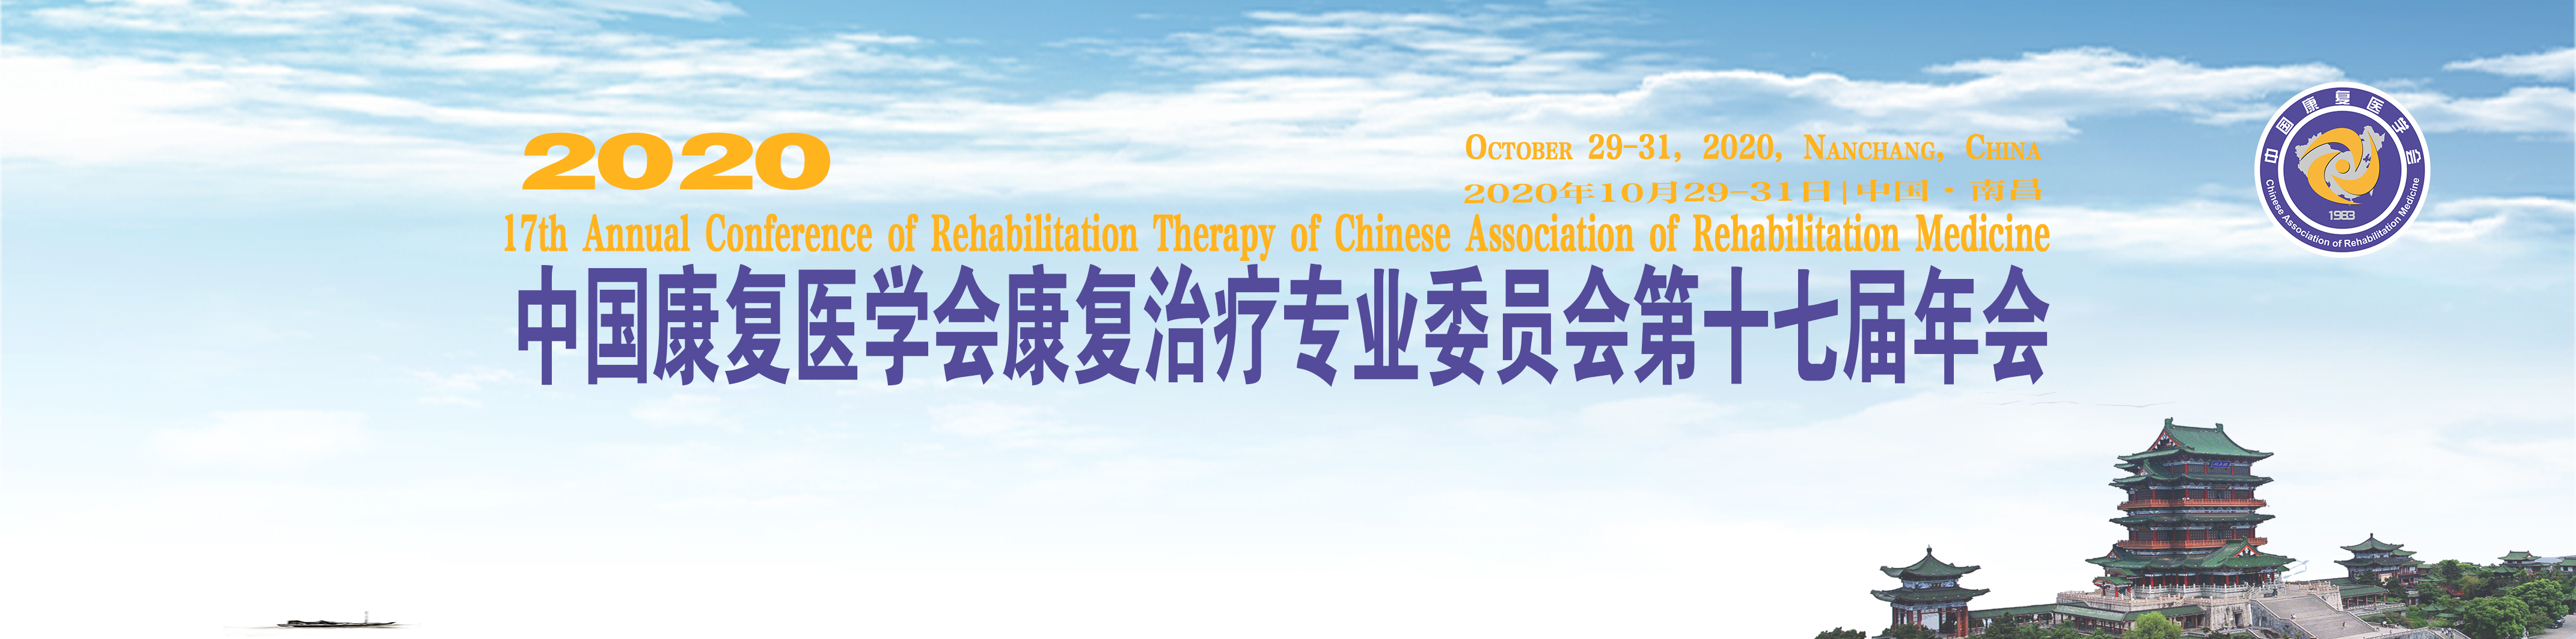 中国康复医学会康复治疗专业委员会第十七届年会